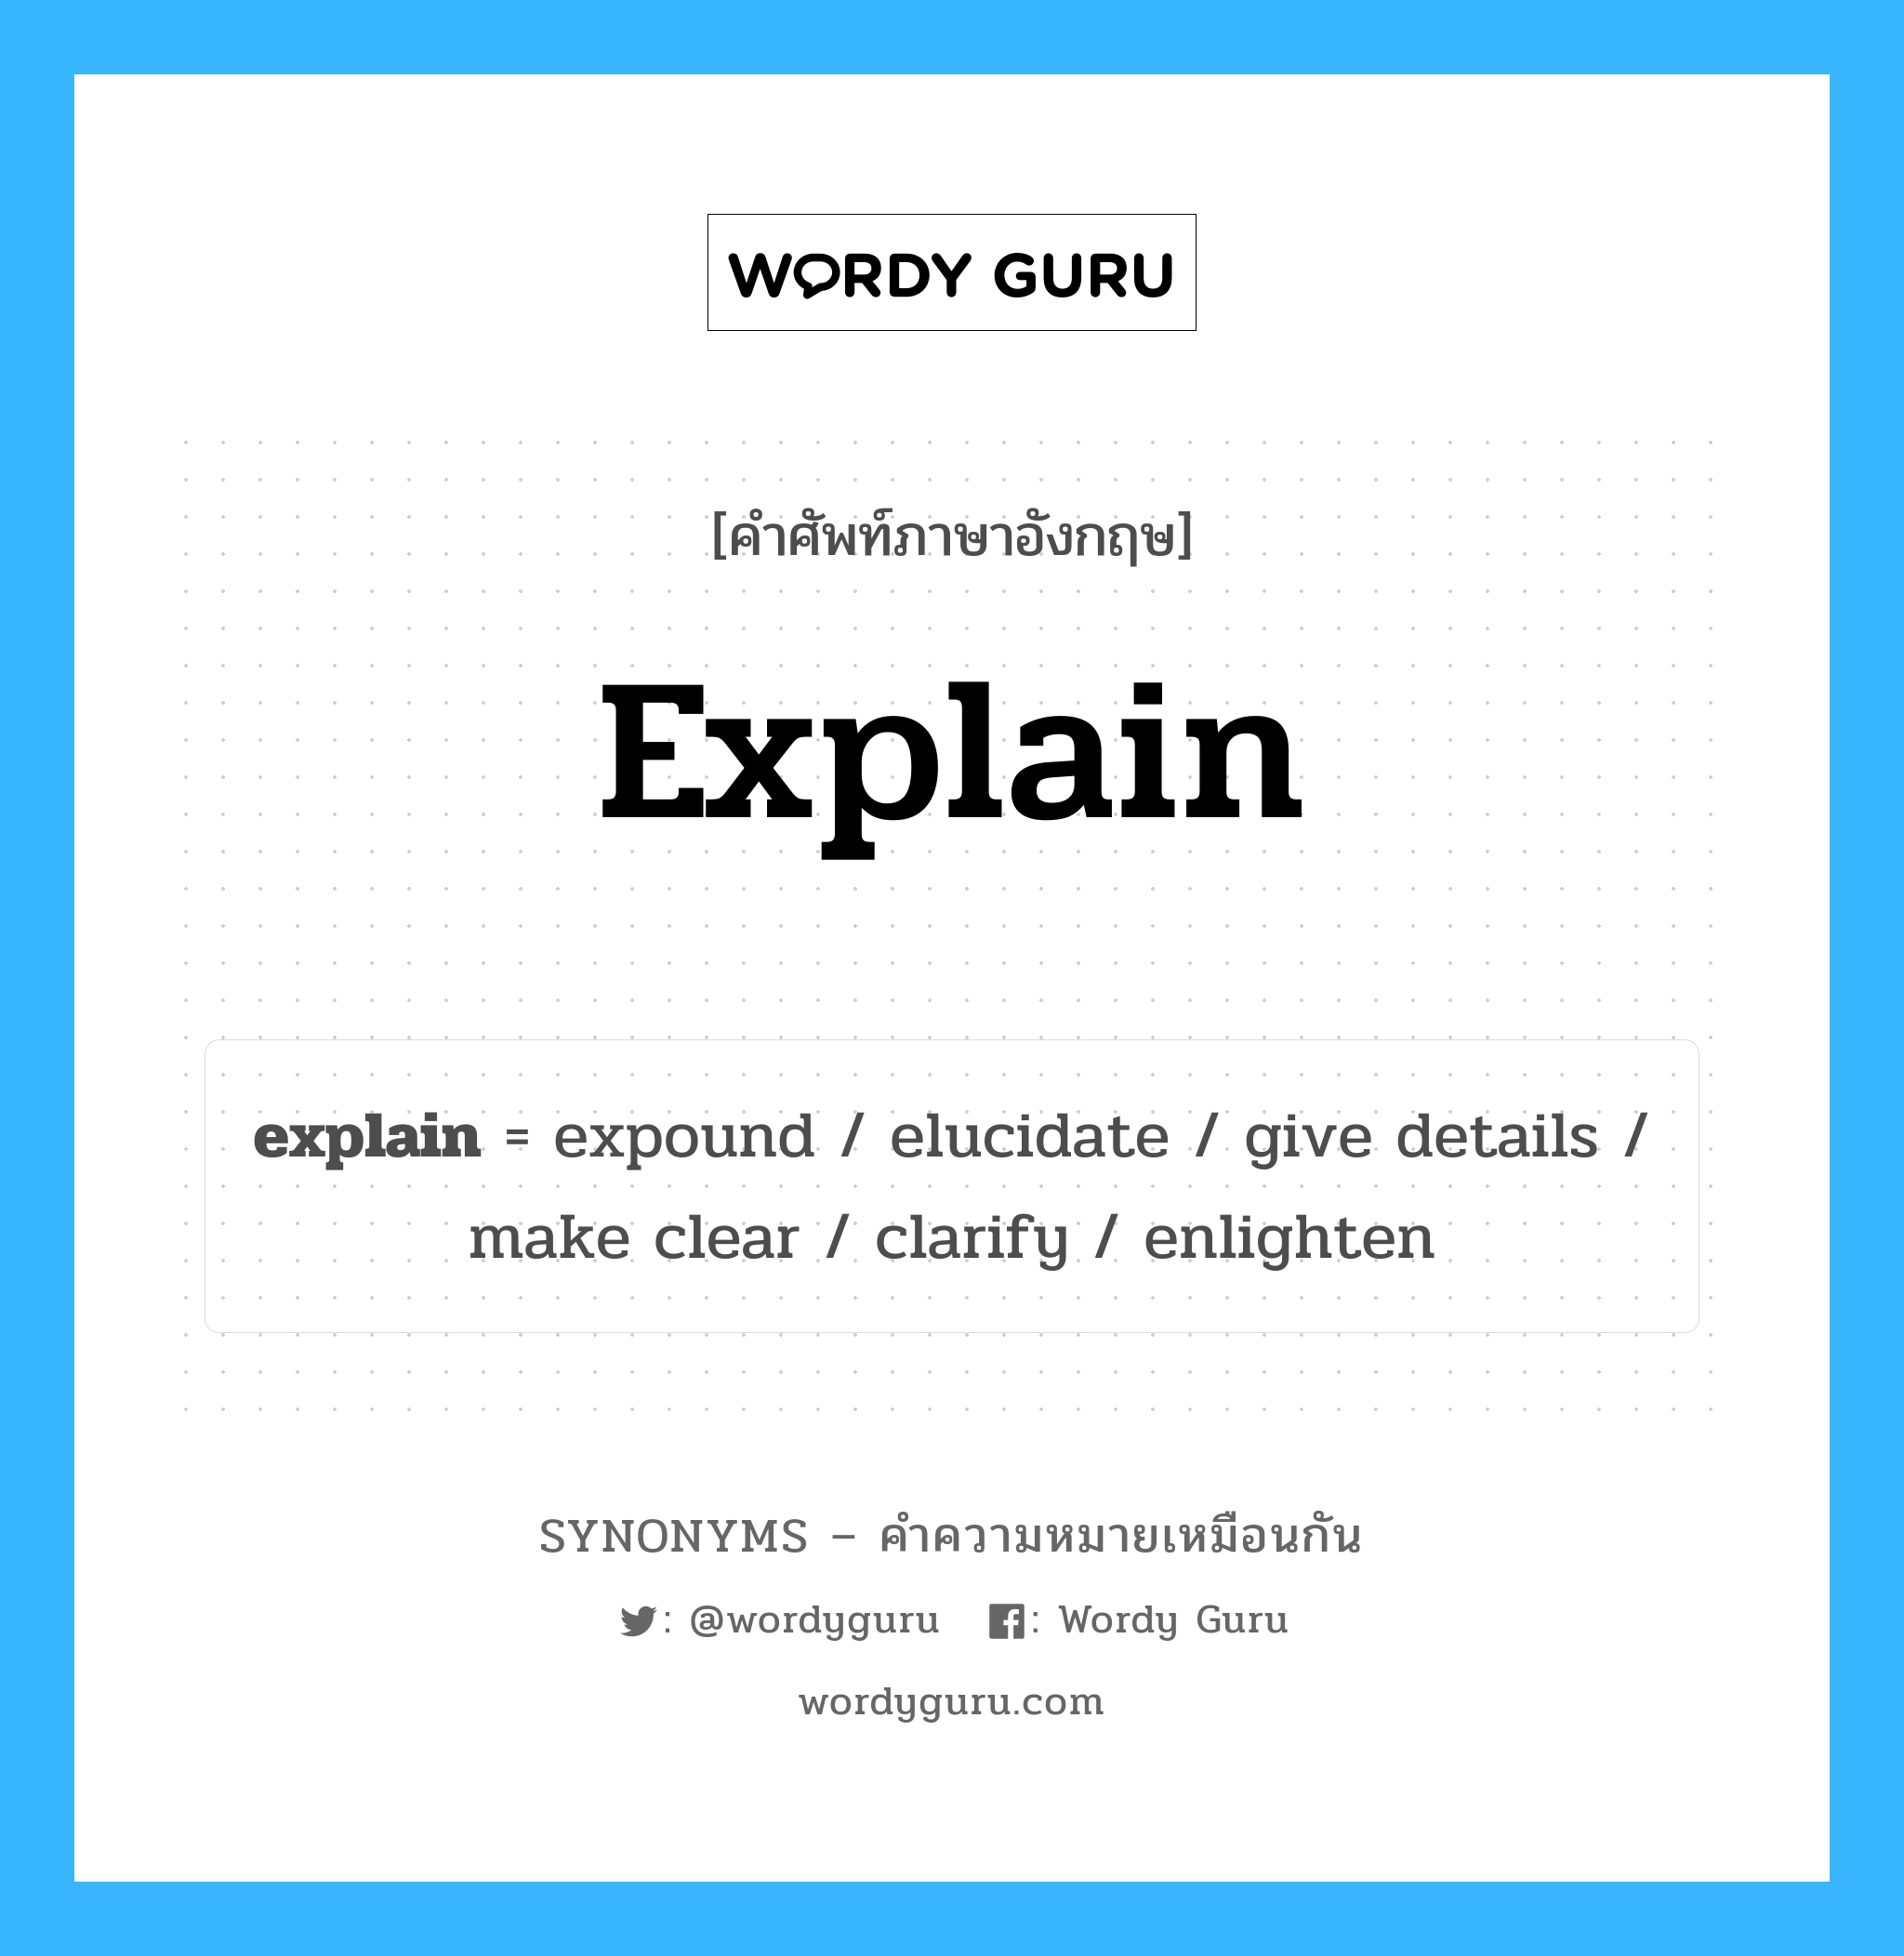 clarify เป็นหนึ่งใน explain และมีคำอื่น ๆ อีกดังนี้, คำศัพท์ภาษาอังกฤษ clarify ความหมายคล้ายกันกับ explain แปลว่า ชี้แจง หมวด explain